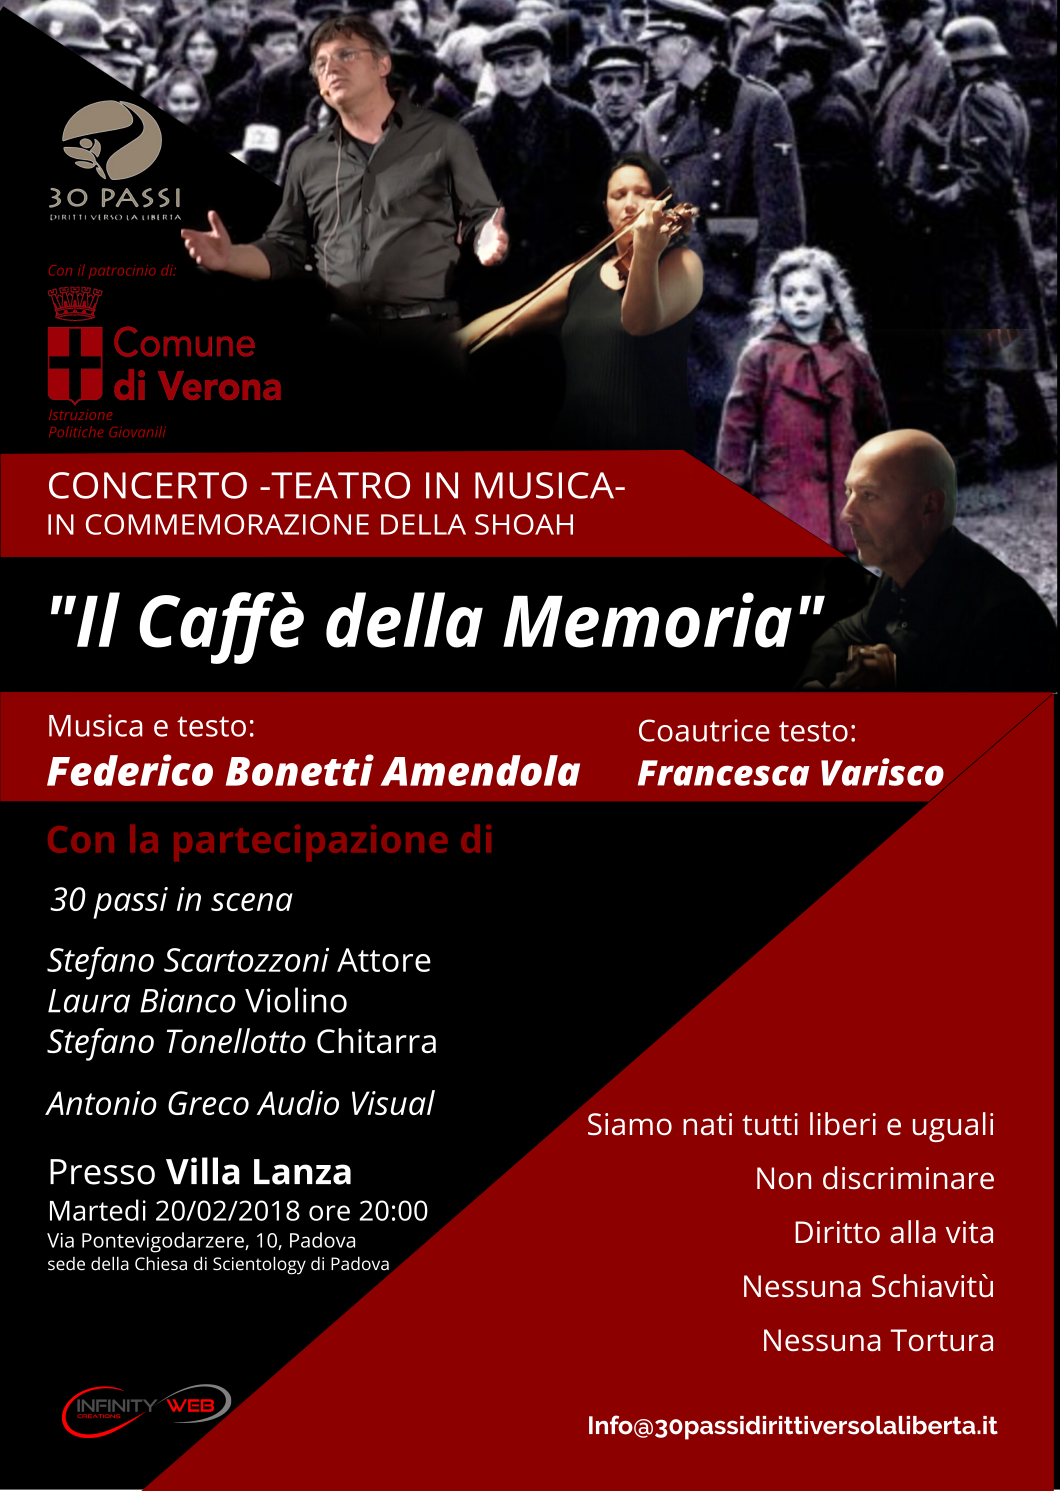 Concerto teatro in musica “Il Caffè della Memoria”